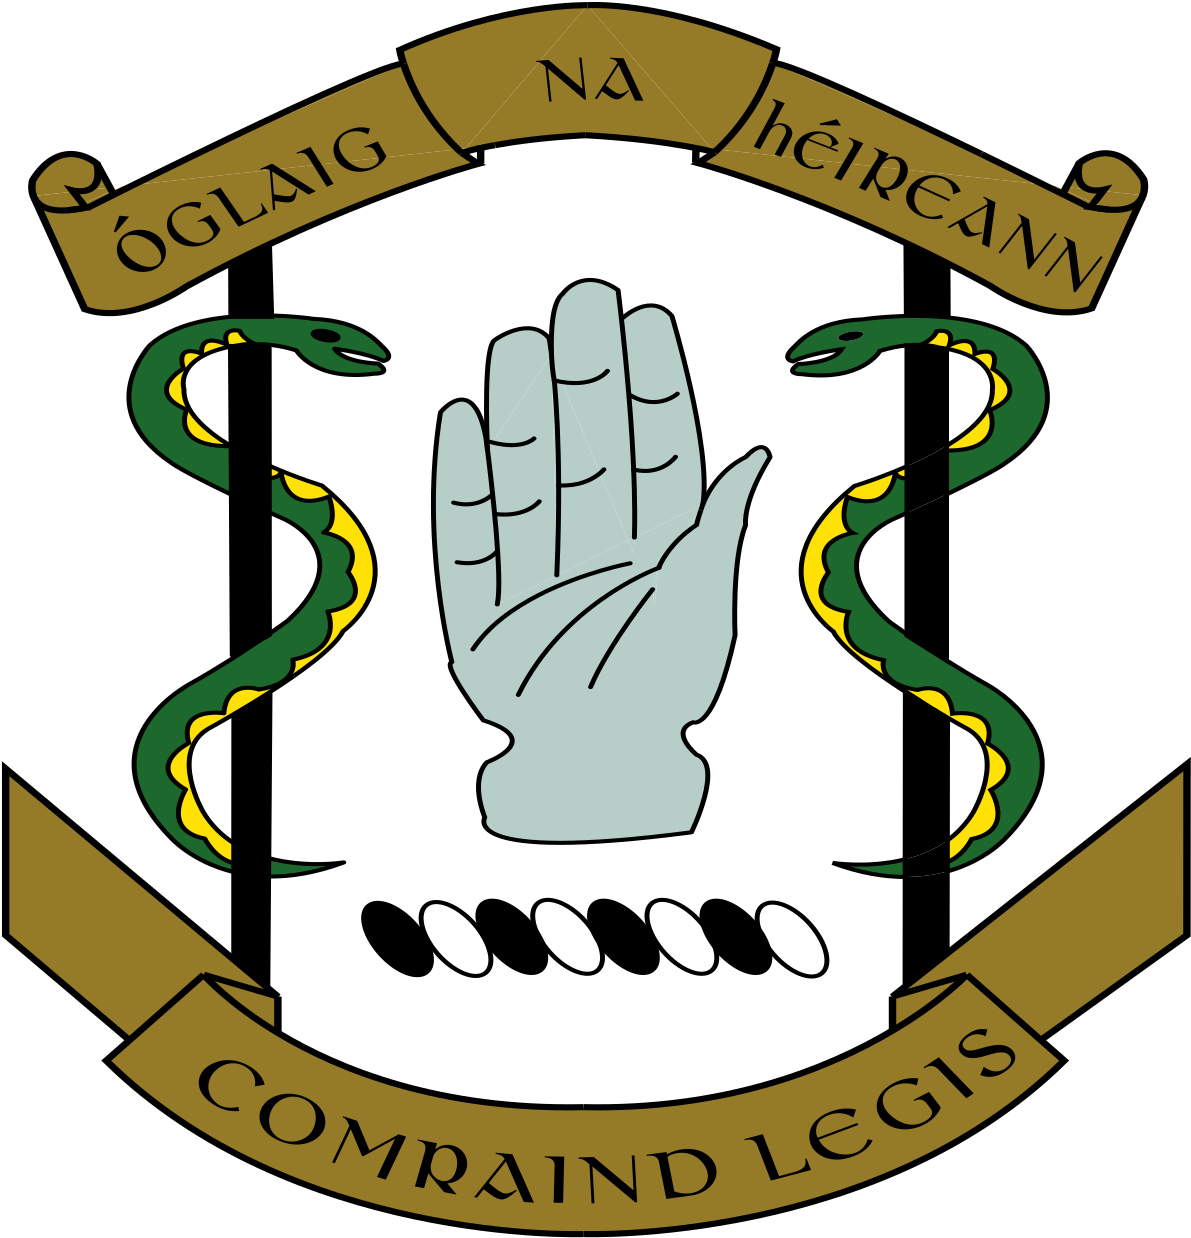 Irish Army Medic (1200x1248)